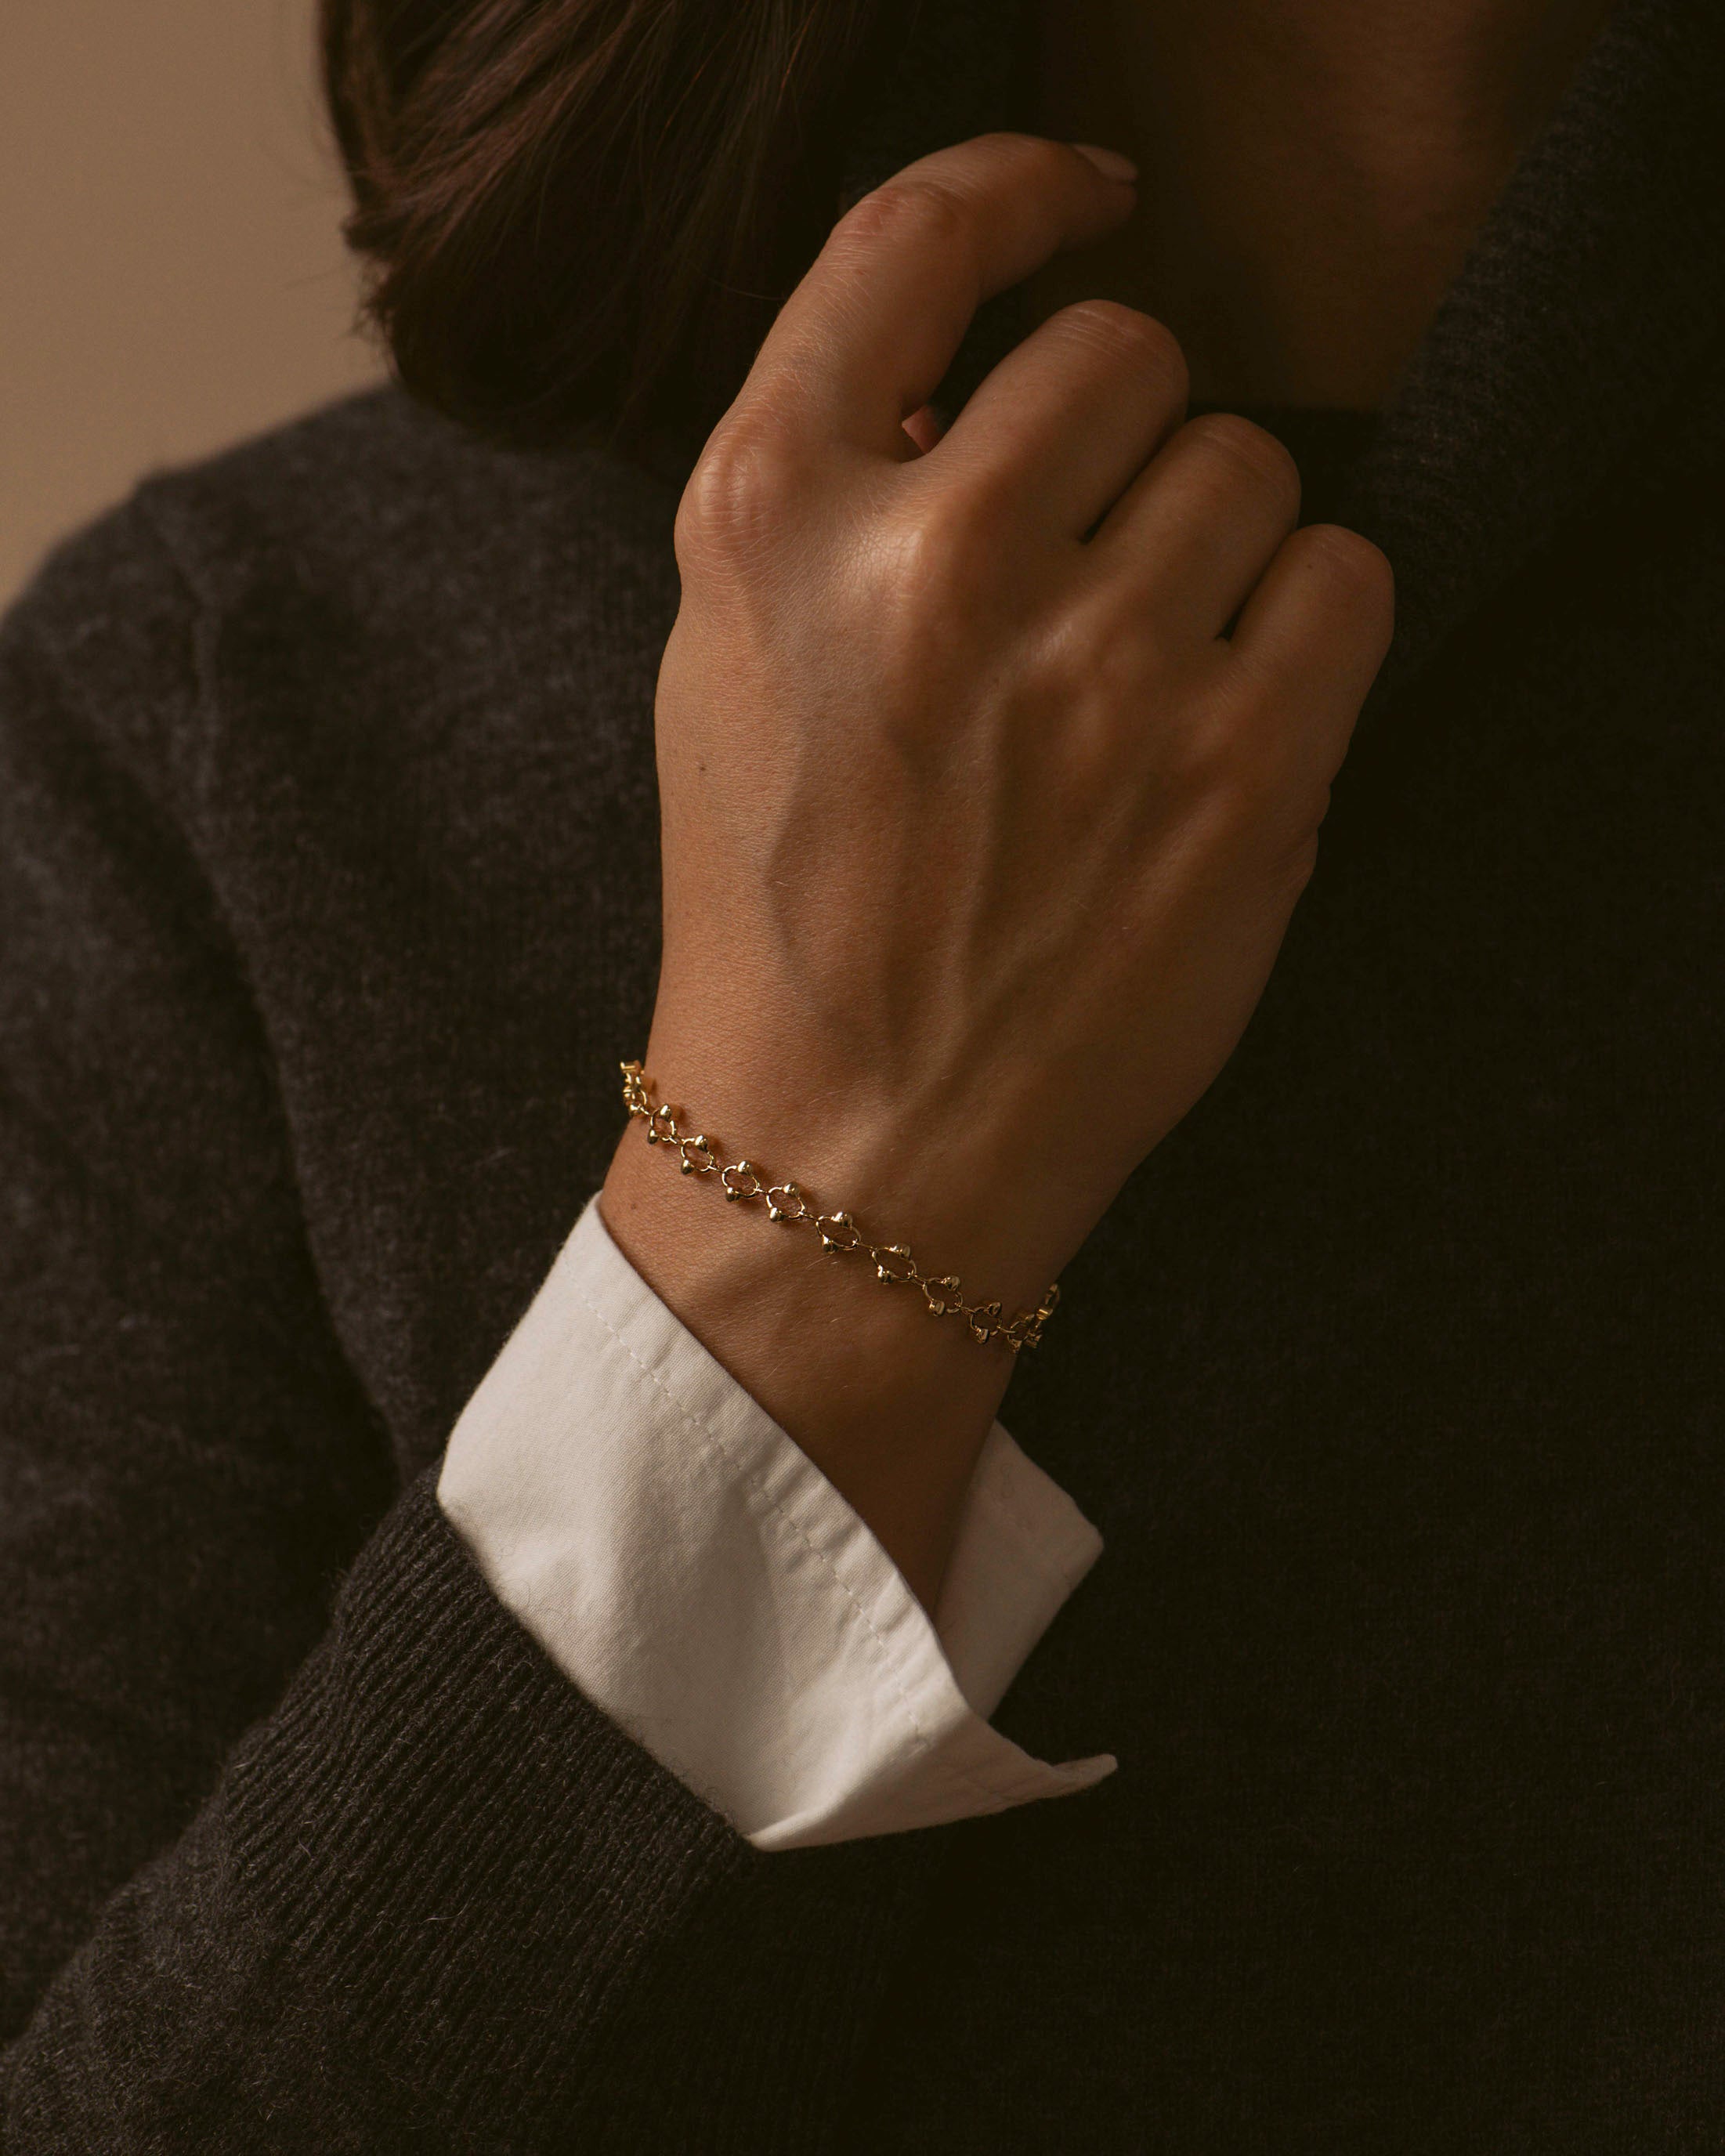 Bracelet élégant made in France, composé d'une chaîne avec des mailles ovales habillées de petites perles dorées sur les côtés, en plaqué or 18 carats.